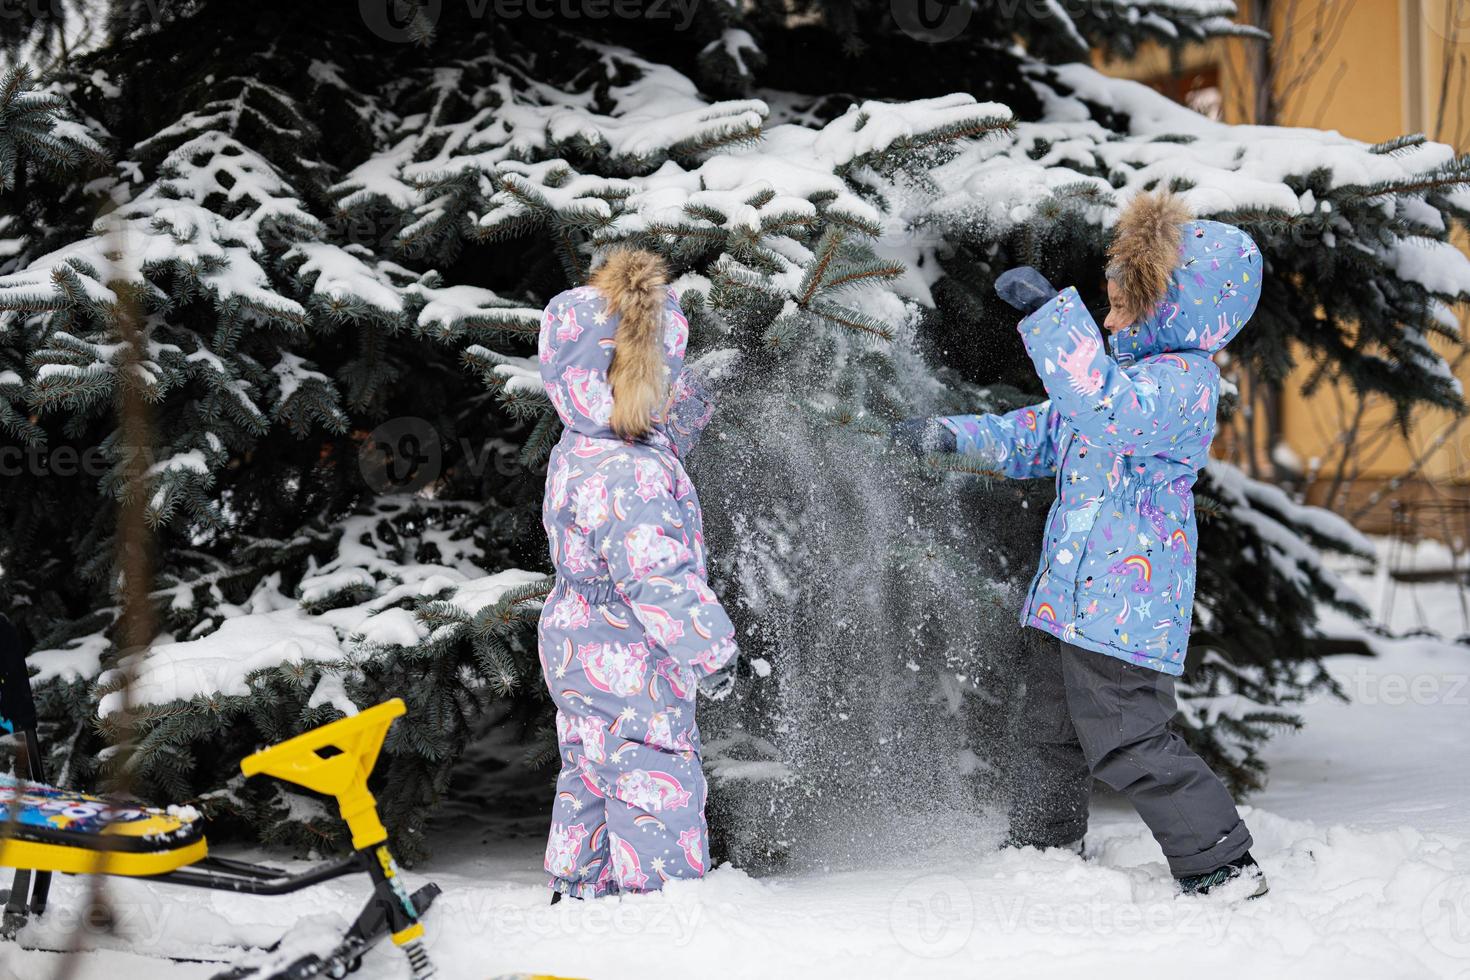 barn spela utomhus i snö. två liten systrar nära jul träd i vinter. foto